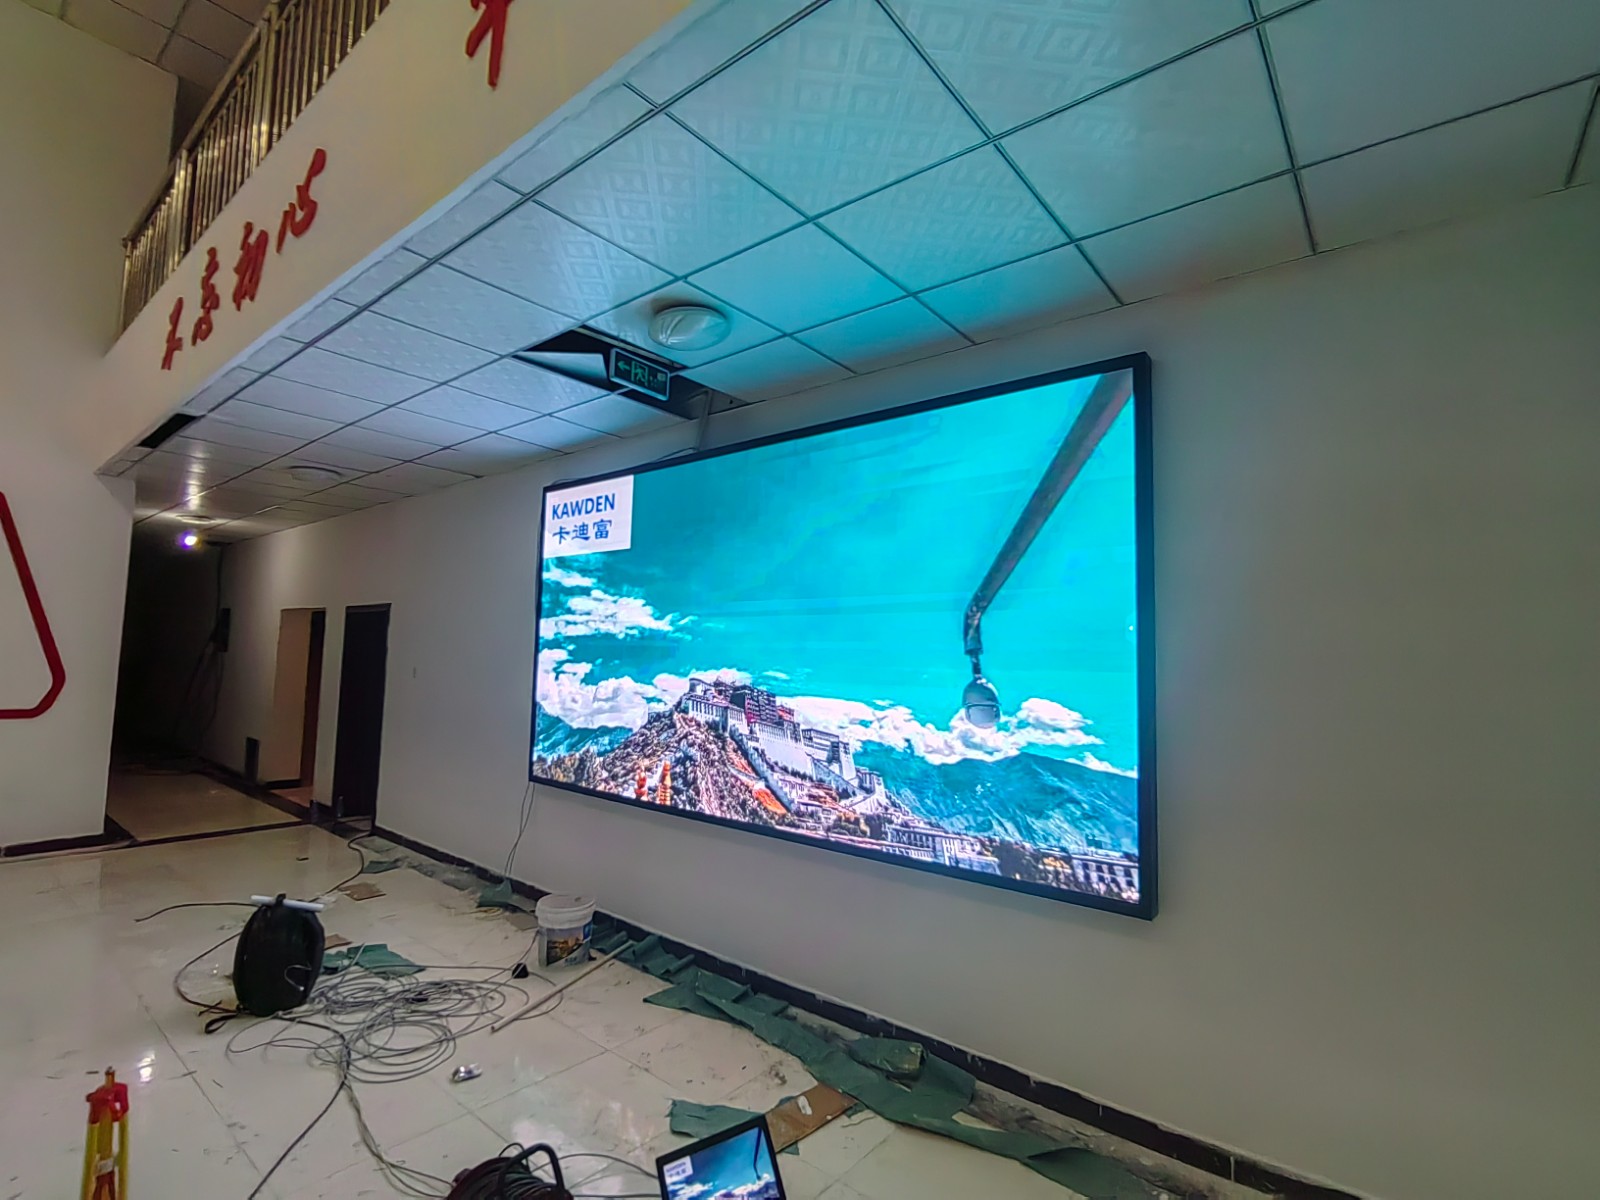 西藏拉萨市某通讯设备销售部项目P2.5led显示屏展示案例